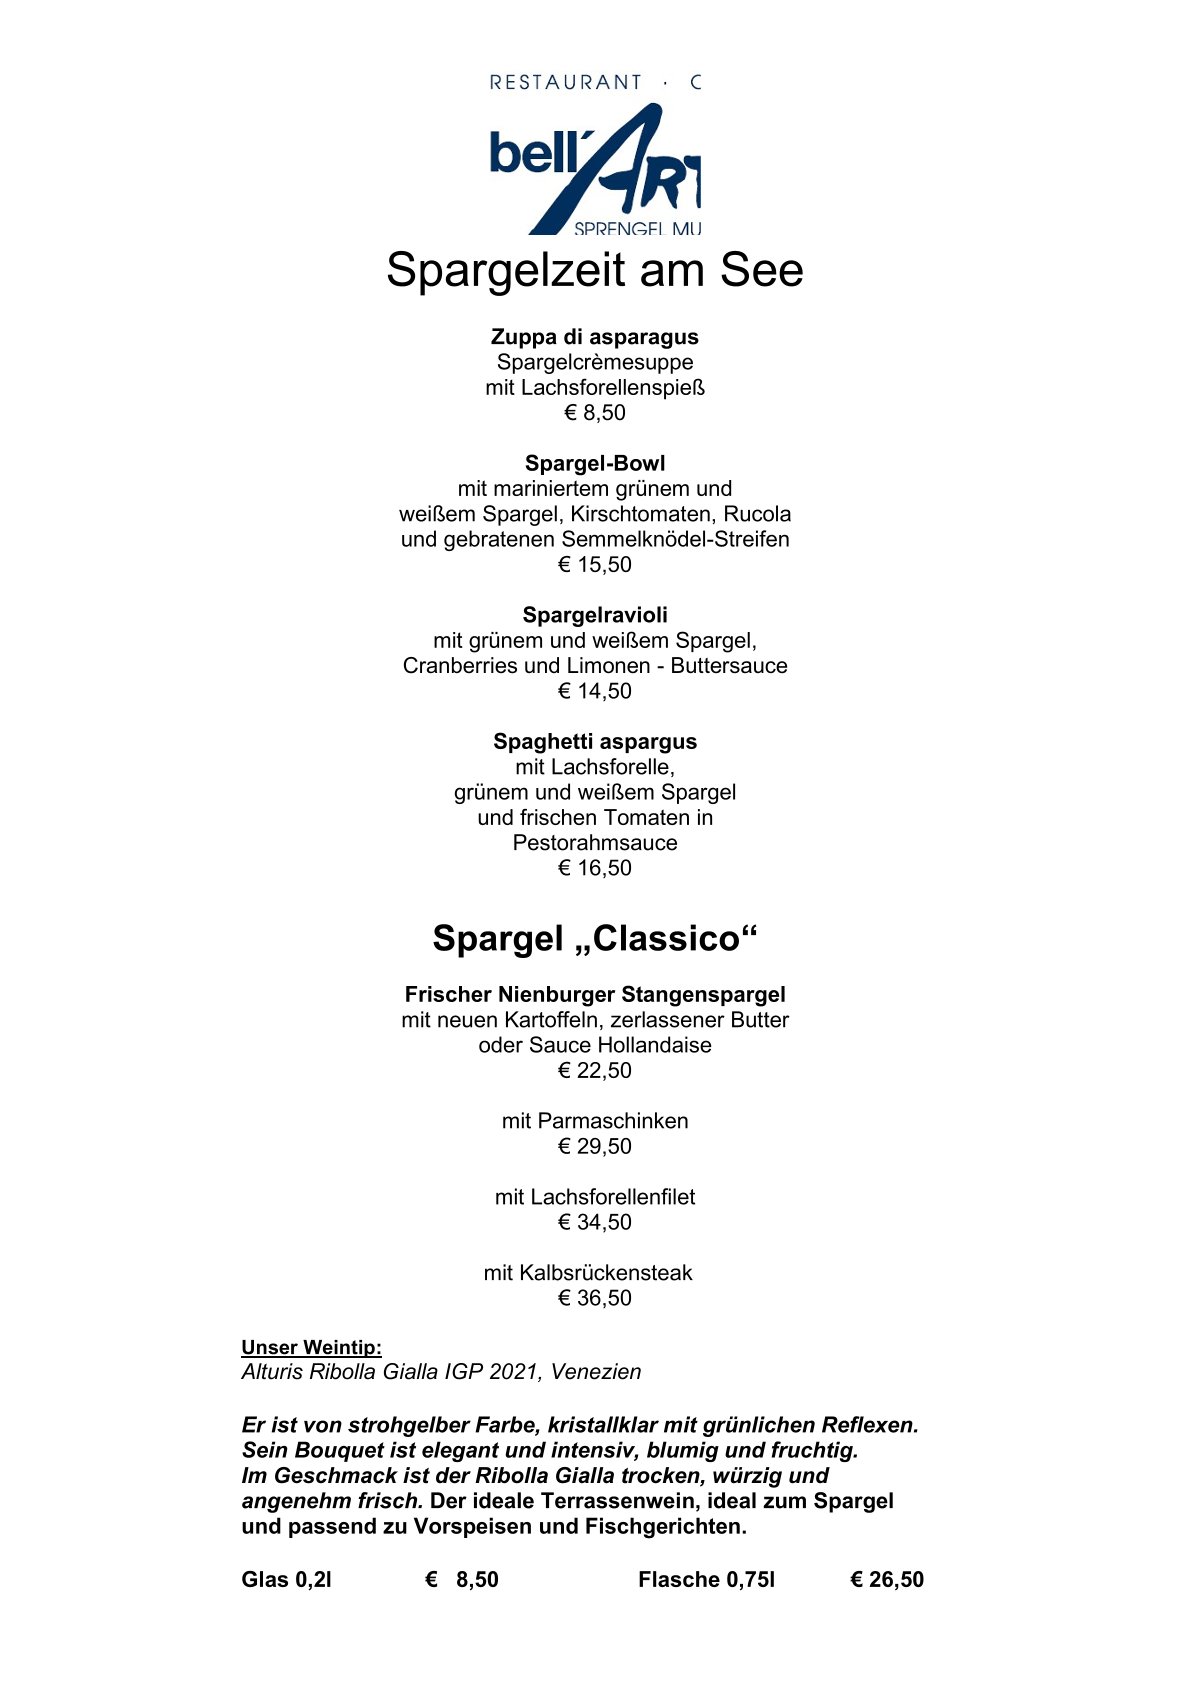 bell´ARTE im Sprengel Museum - Cafe und italienisches Restaurant in Hannover am Maschsee